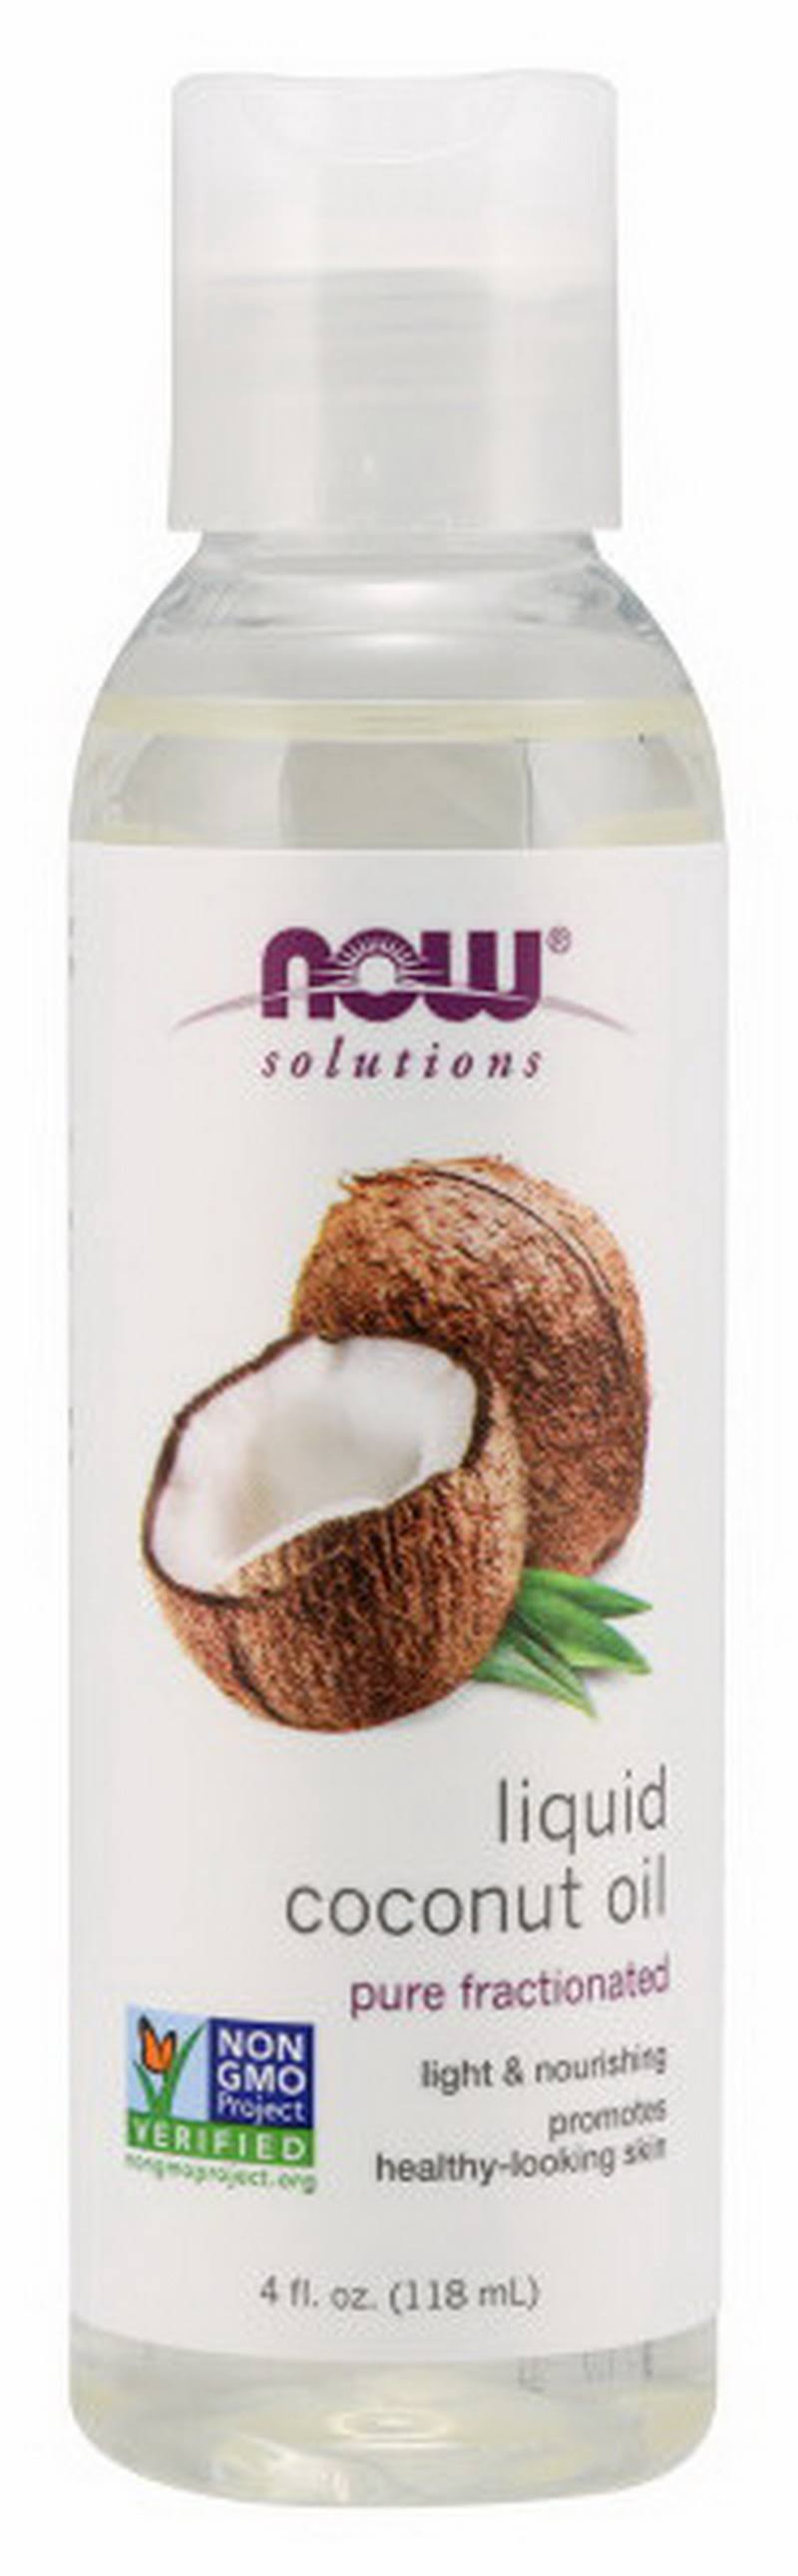 NOW Foods Liquid Coconut Oil 4 fl oz